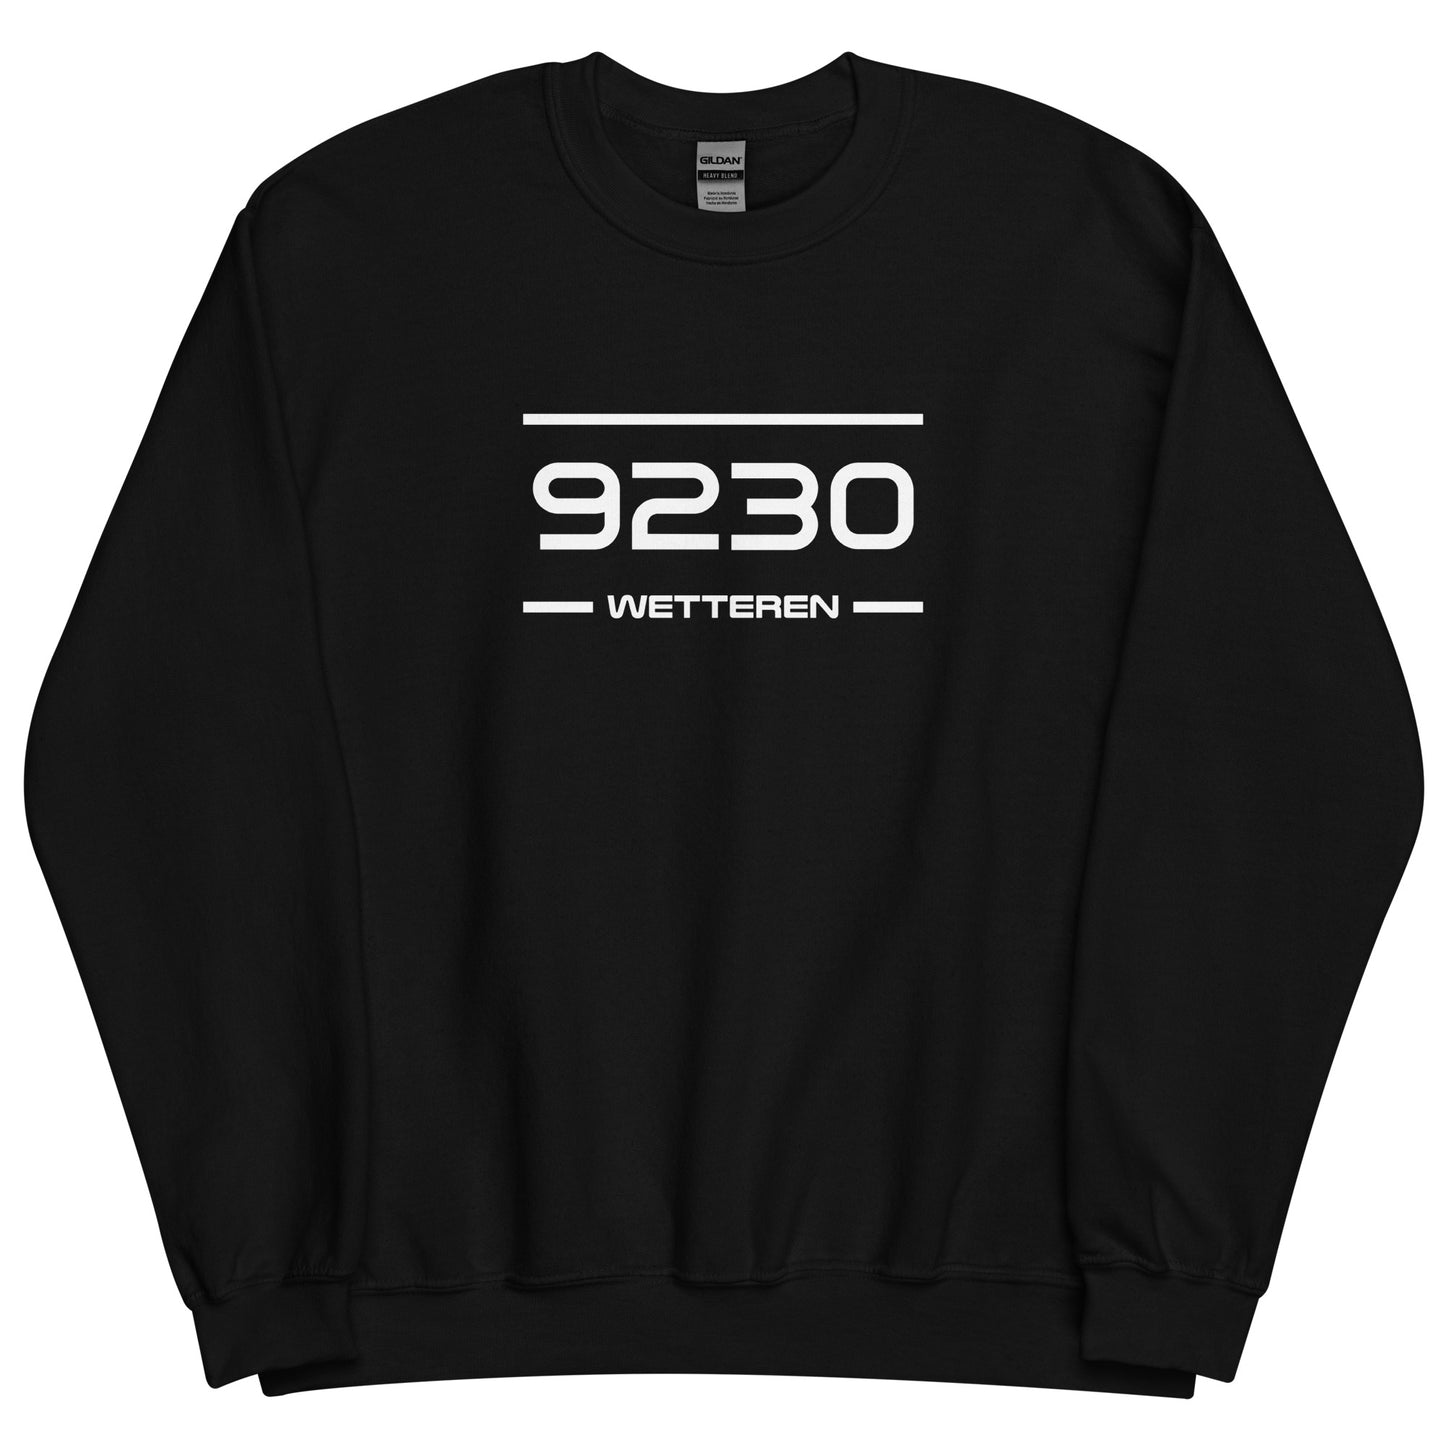 Sweater - 9230 - Wetteren (M/V)